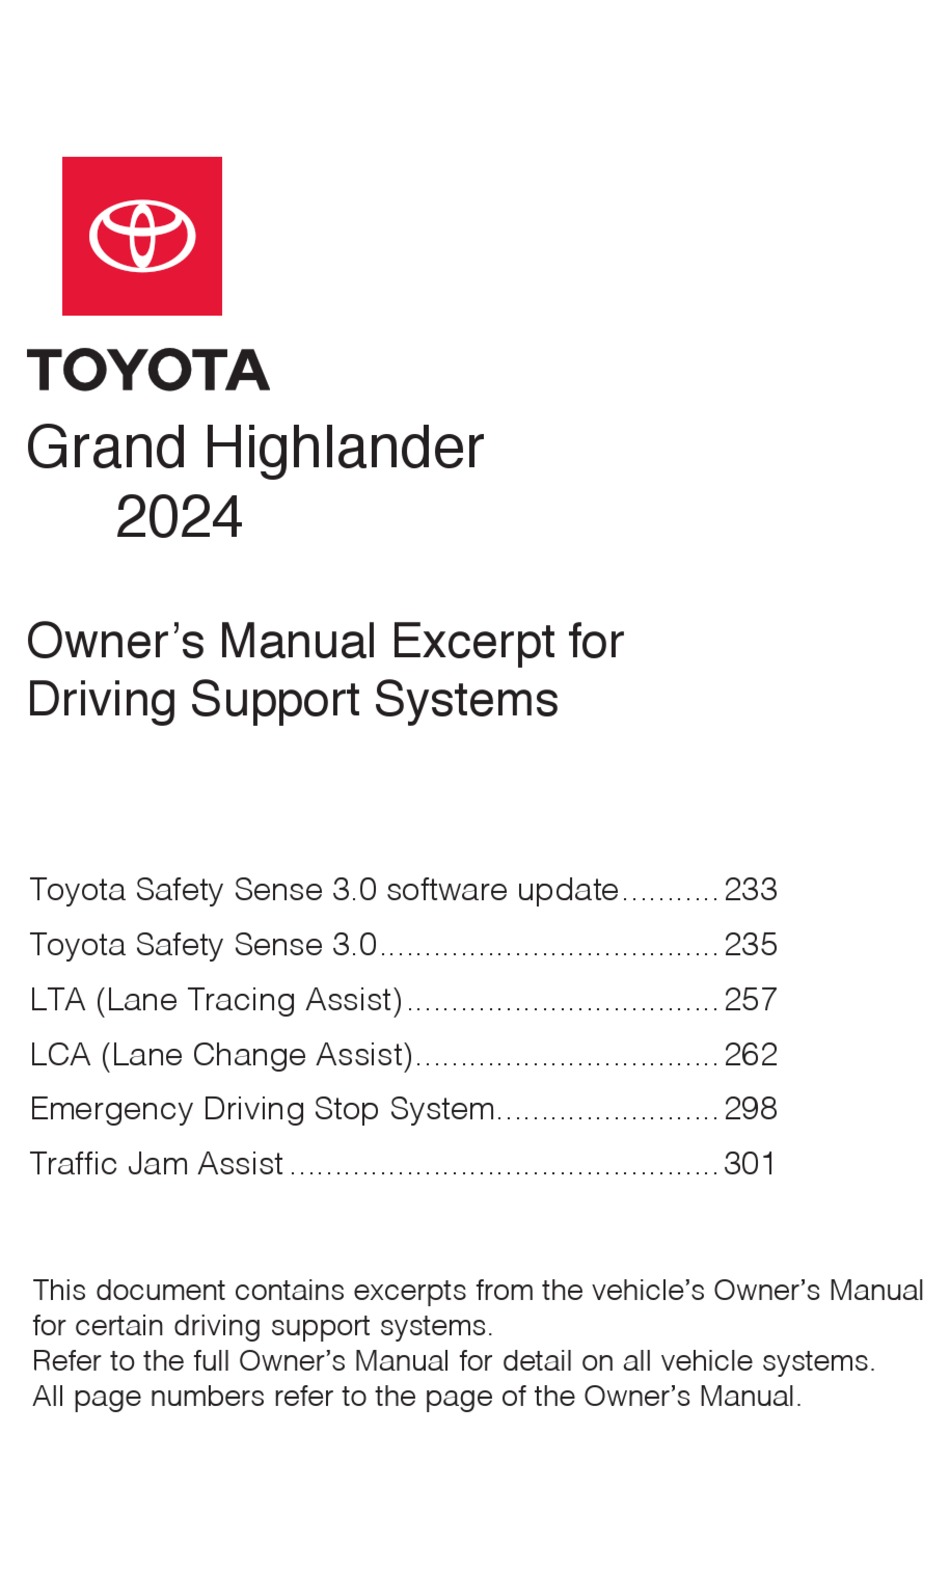 TOYOTA GRAND HIGHLANDER 2024 OWNER'S MANUAL Pdf Download ManualsLib